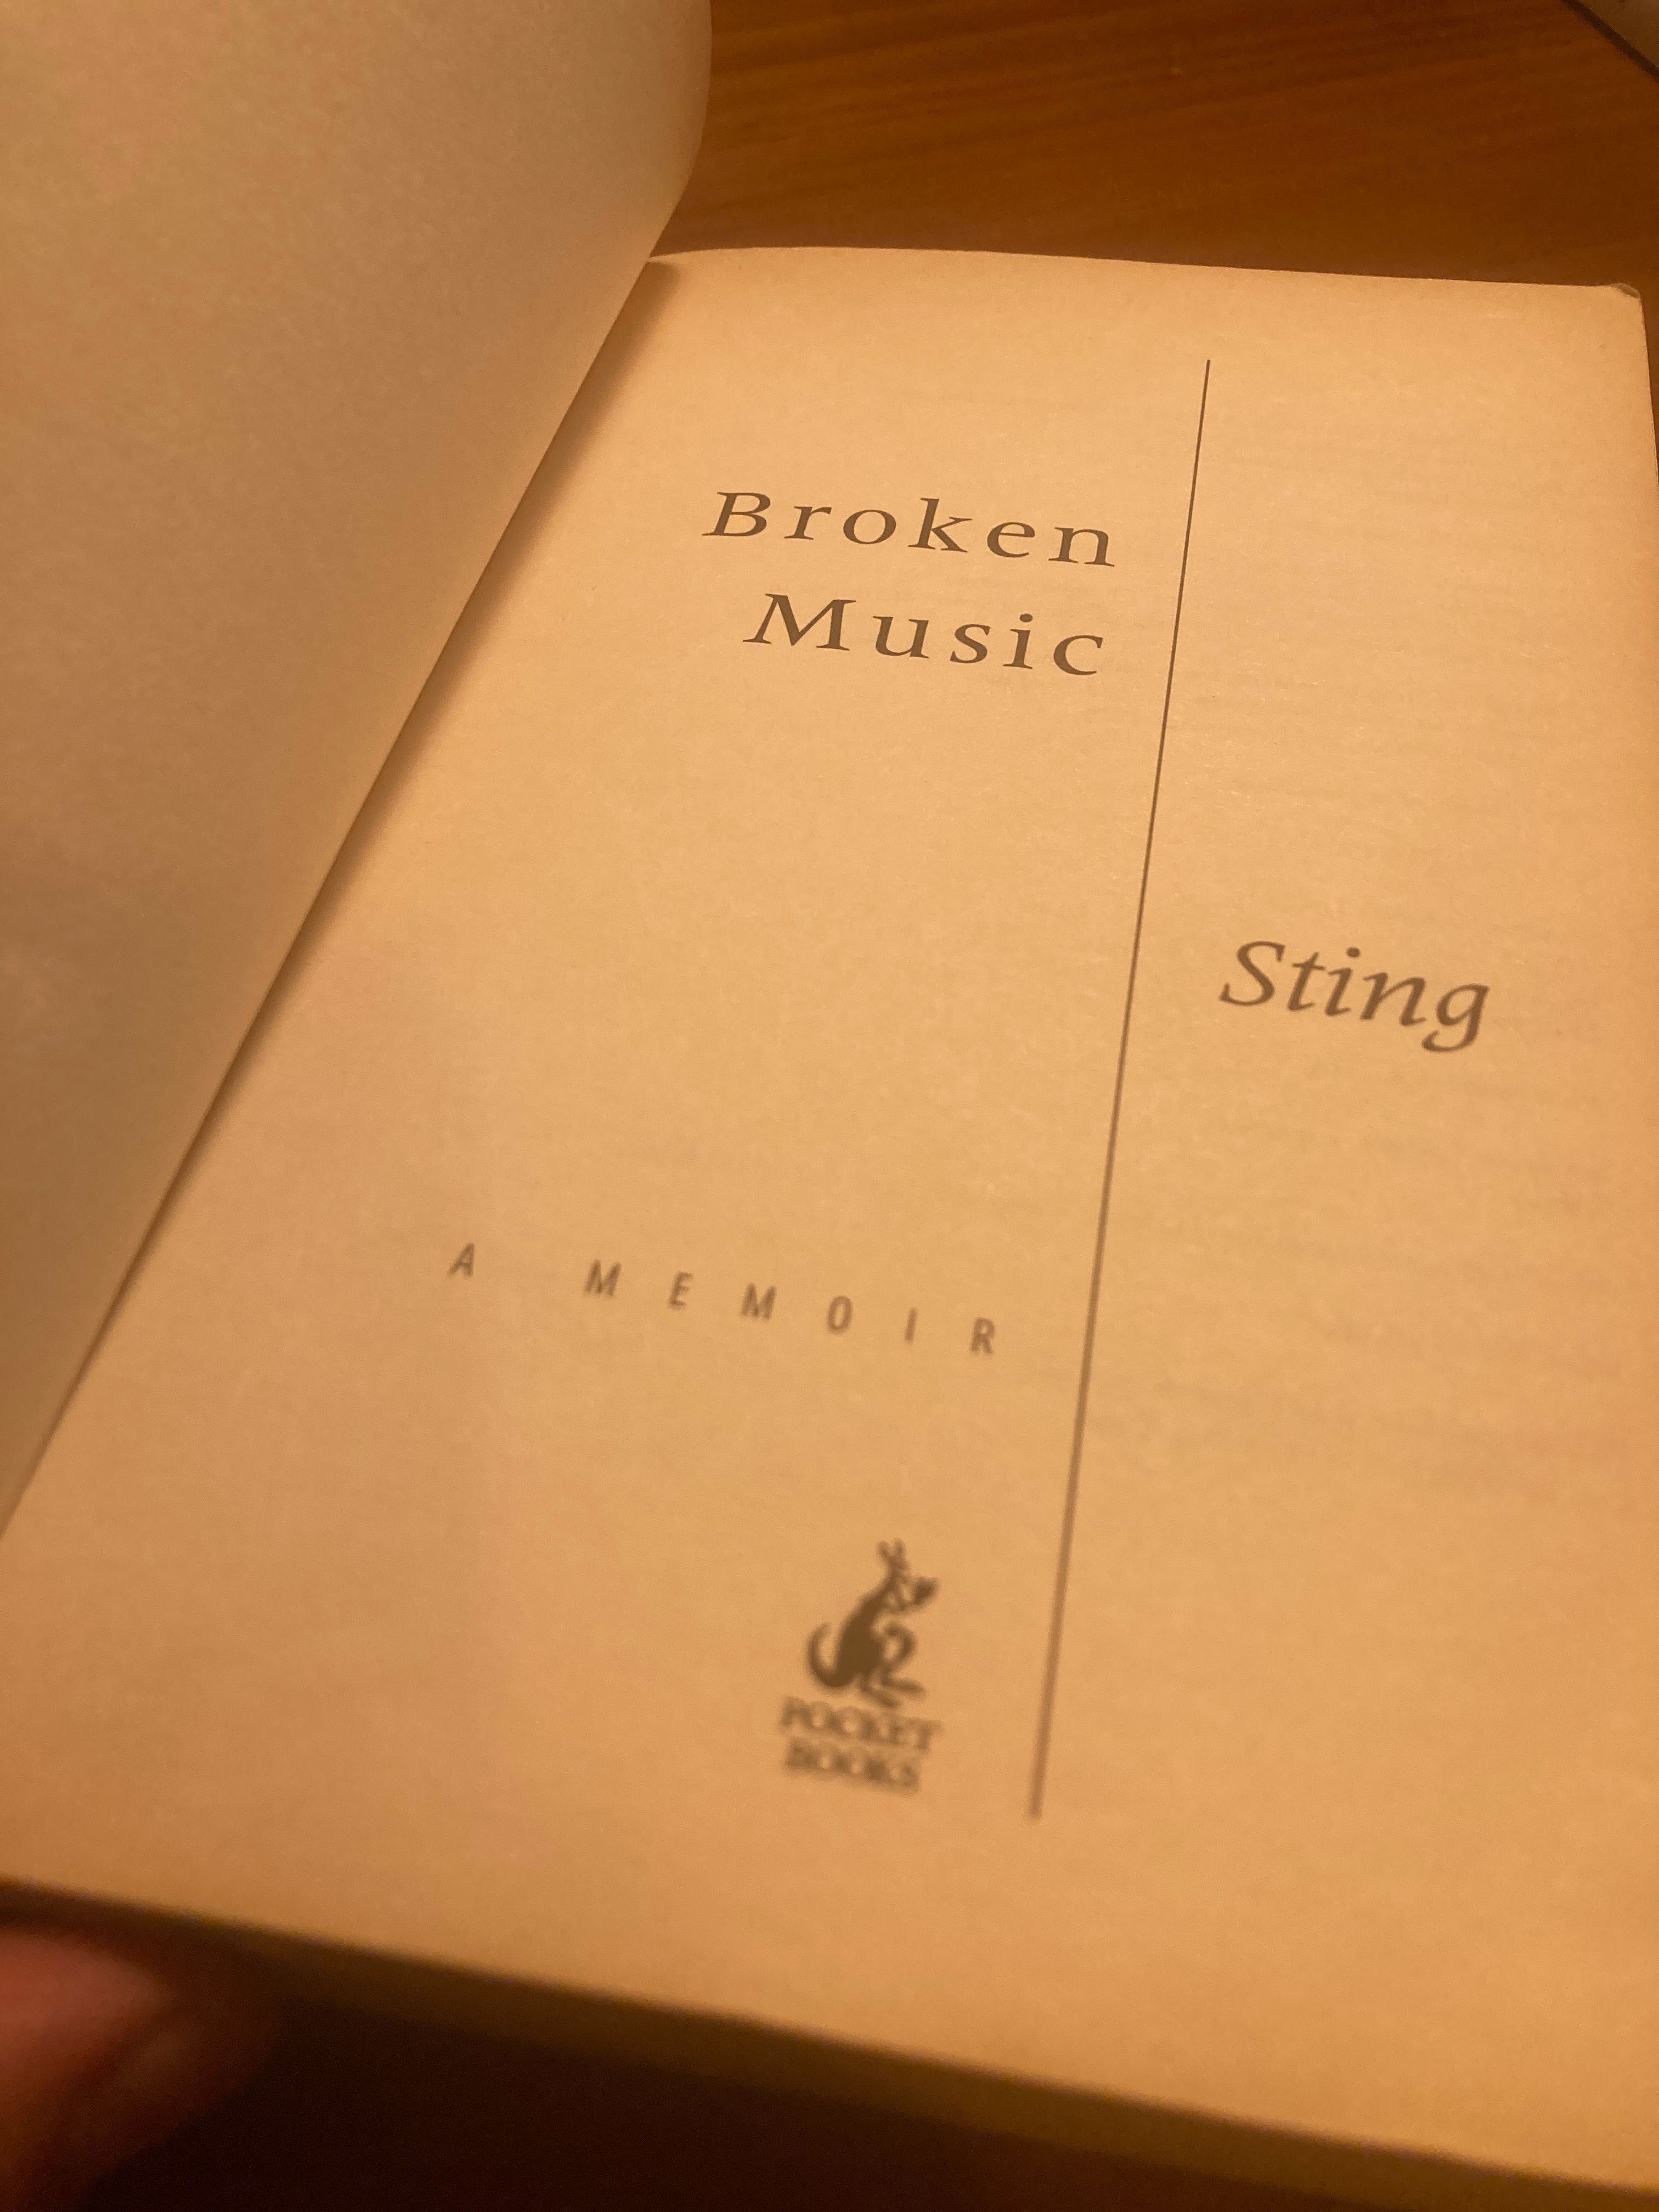 Livro autobiografia do sting “broken music”